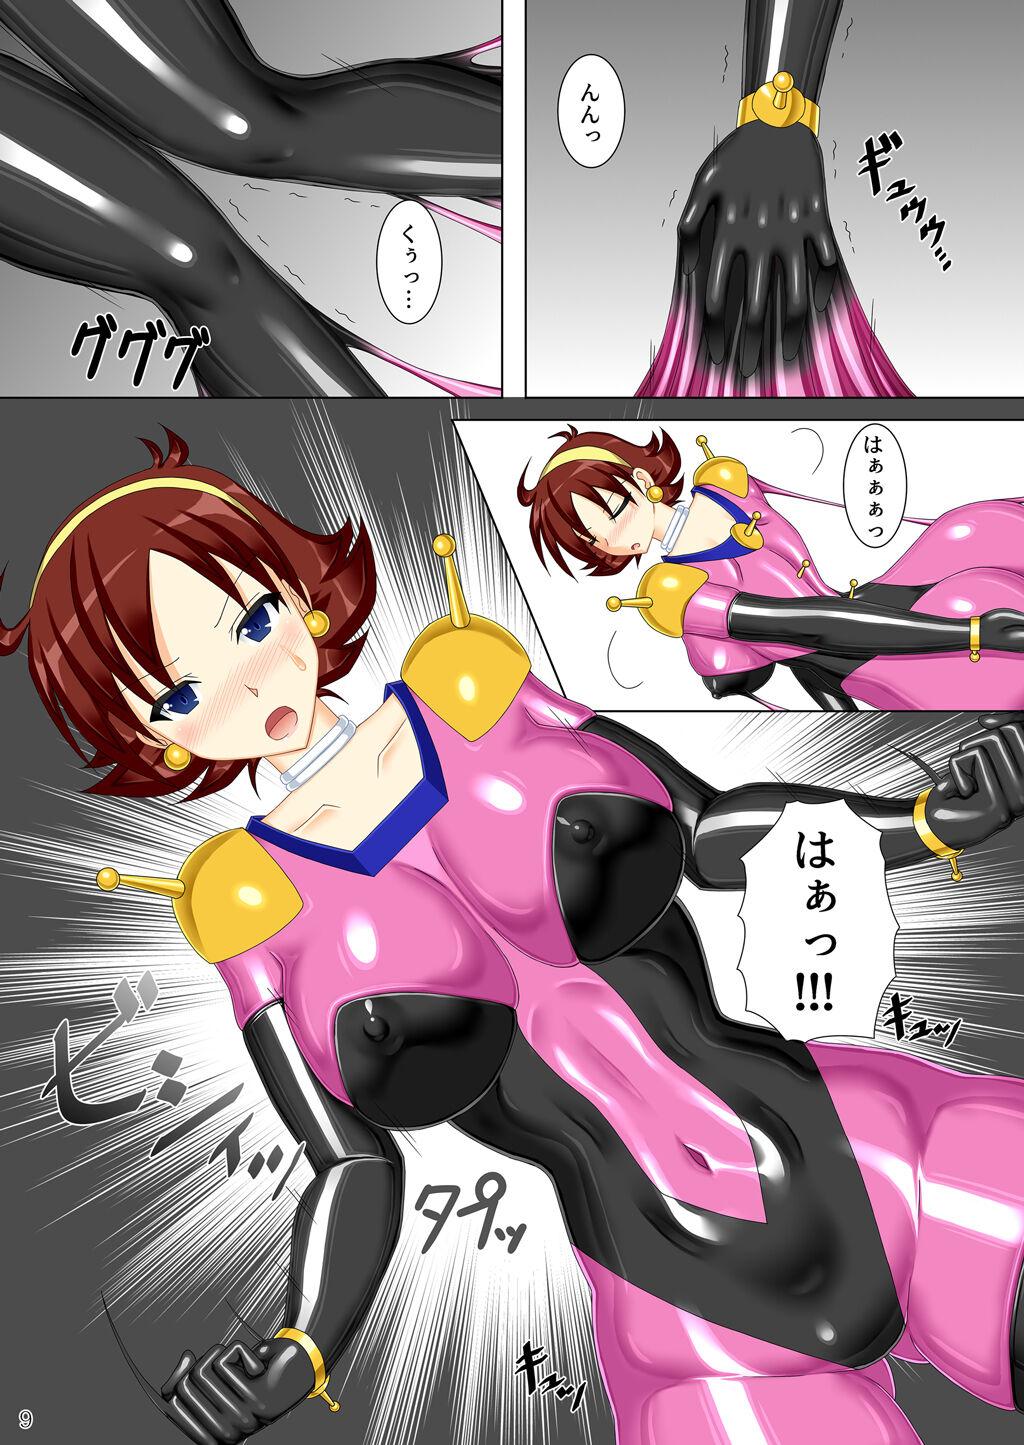 Solo Female Souchaku! Fighting Suit!! - G gundam Dress - Page 10